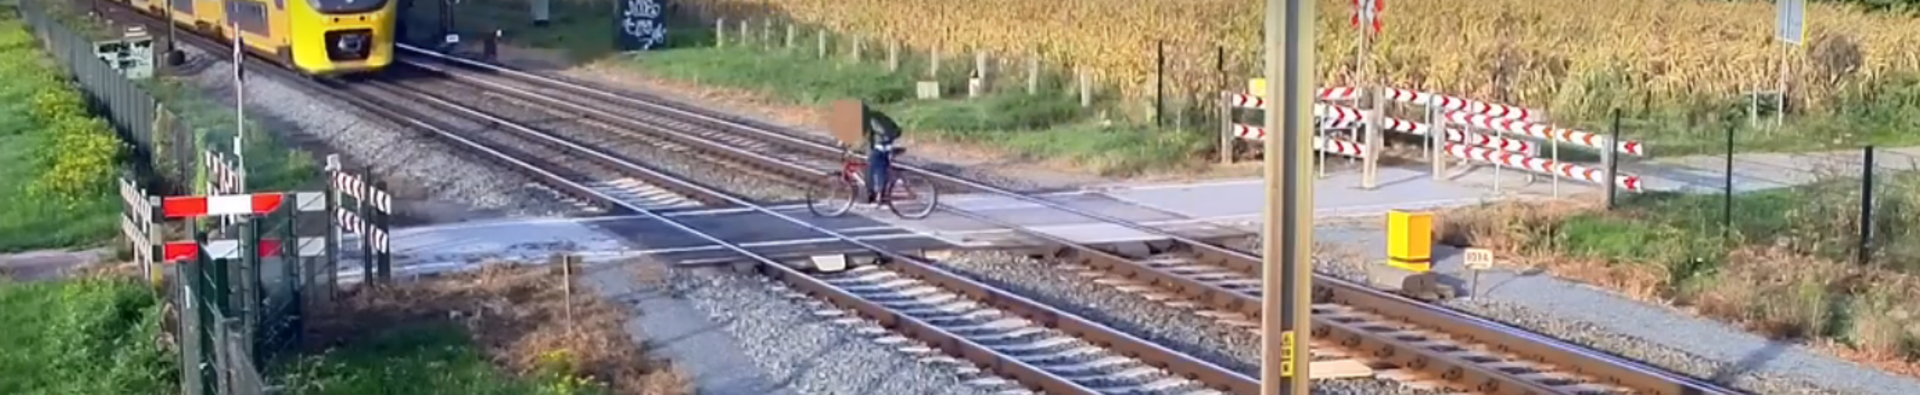 Jen pár sekund ho dělilo od smrti: Cyklista přehlédl projíždějící vlak